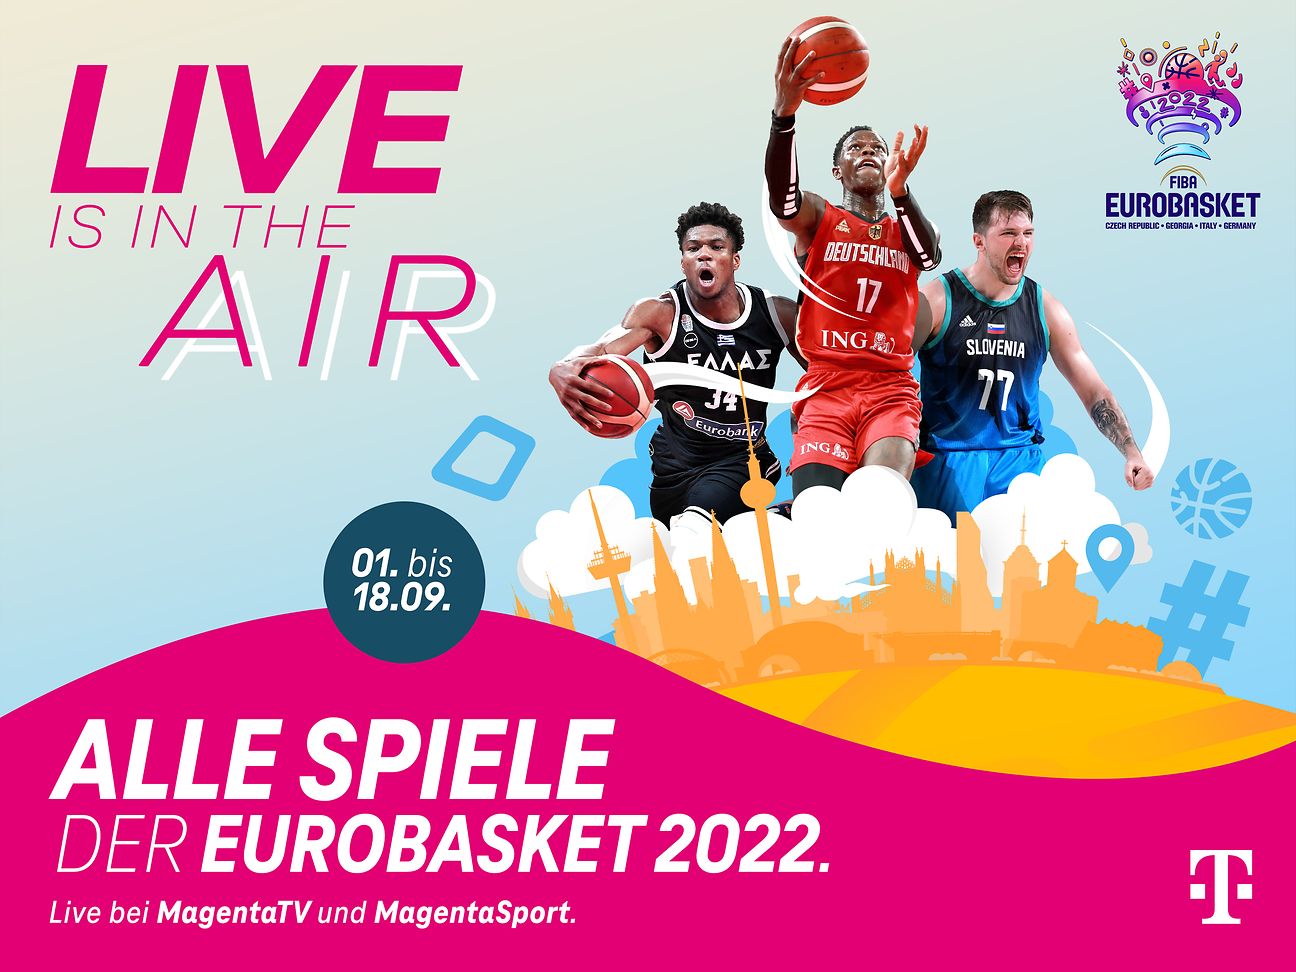 Die Basketball Europameisterschaft 2022 live bei MagentaSport Deutsche Telekom